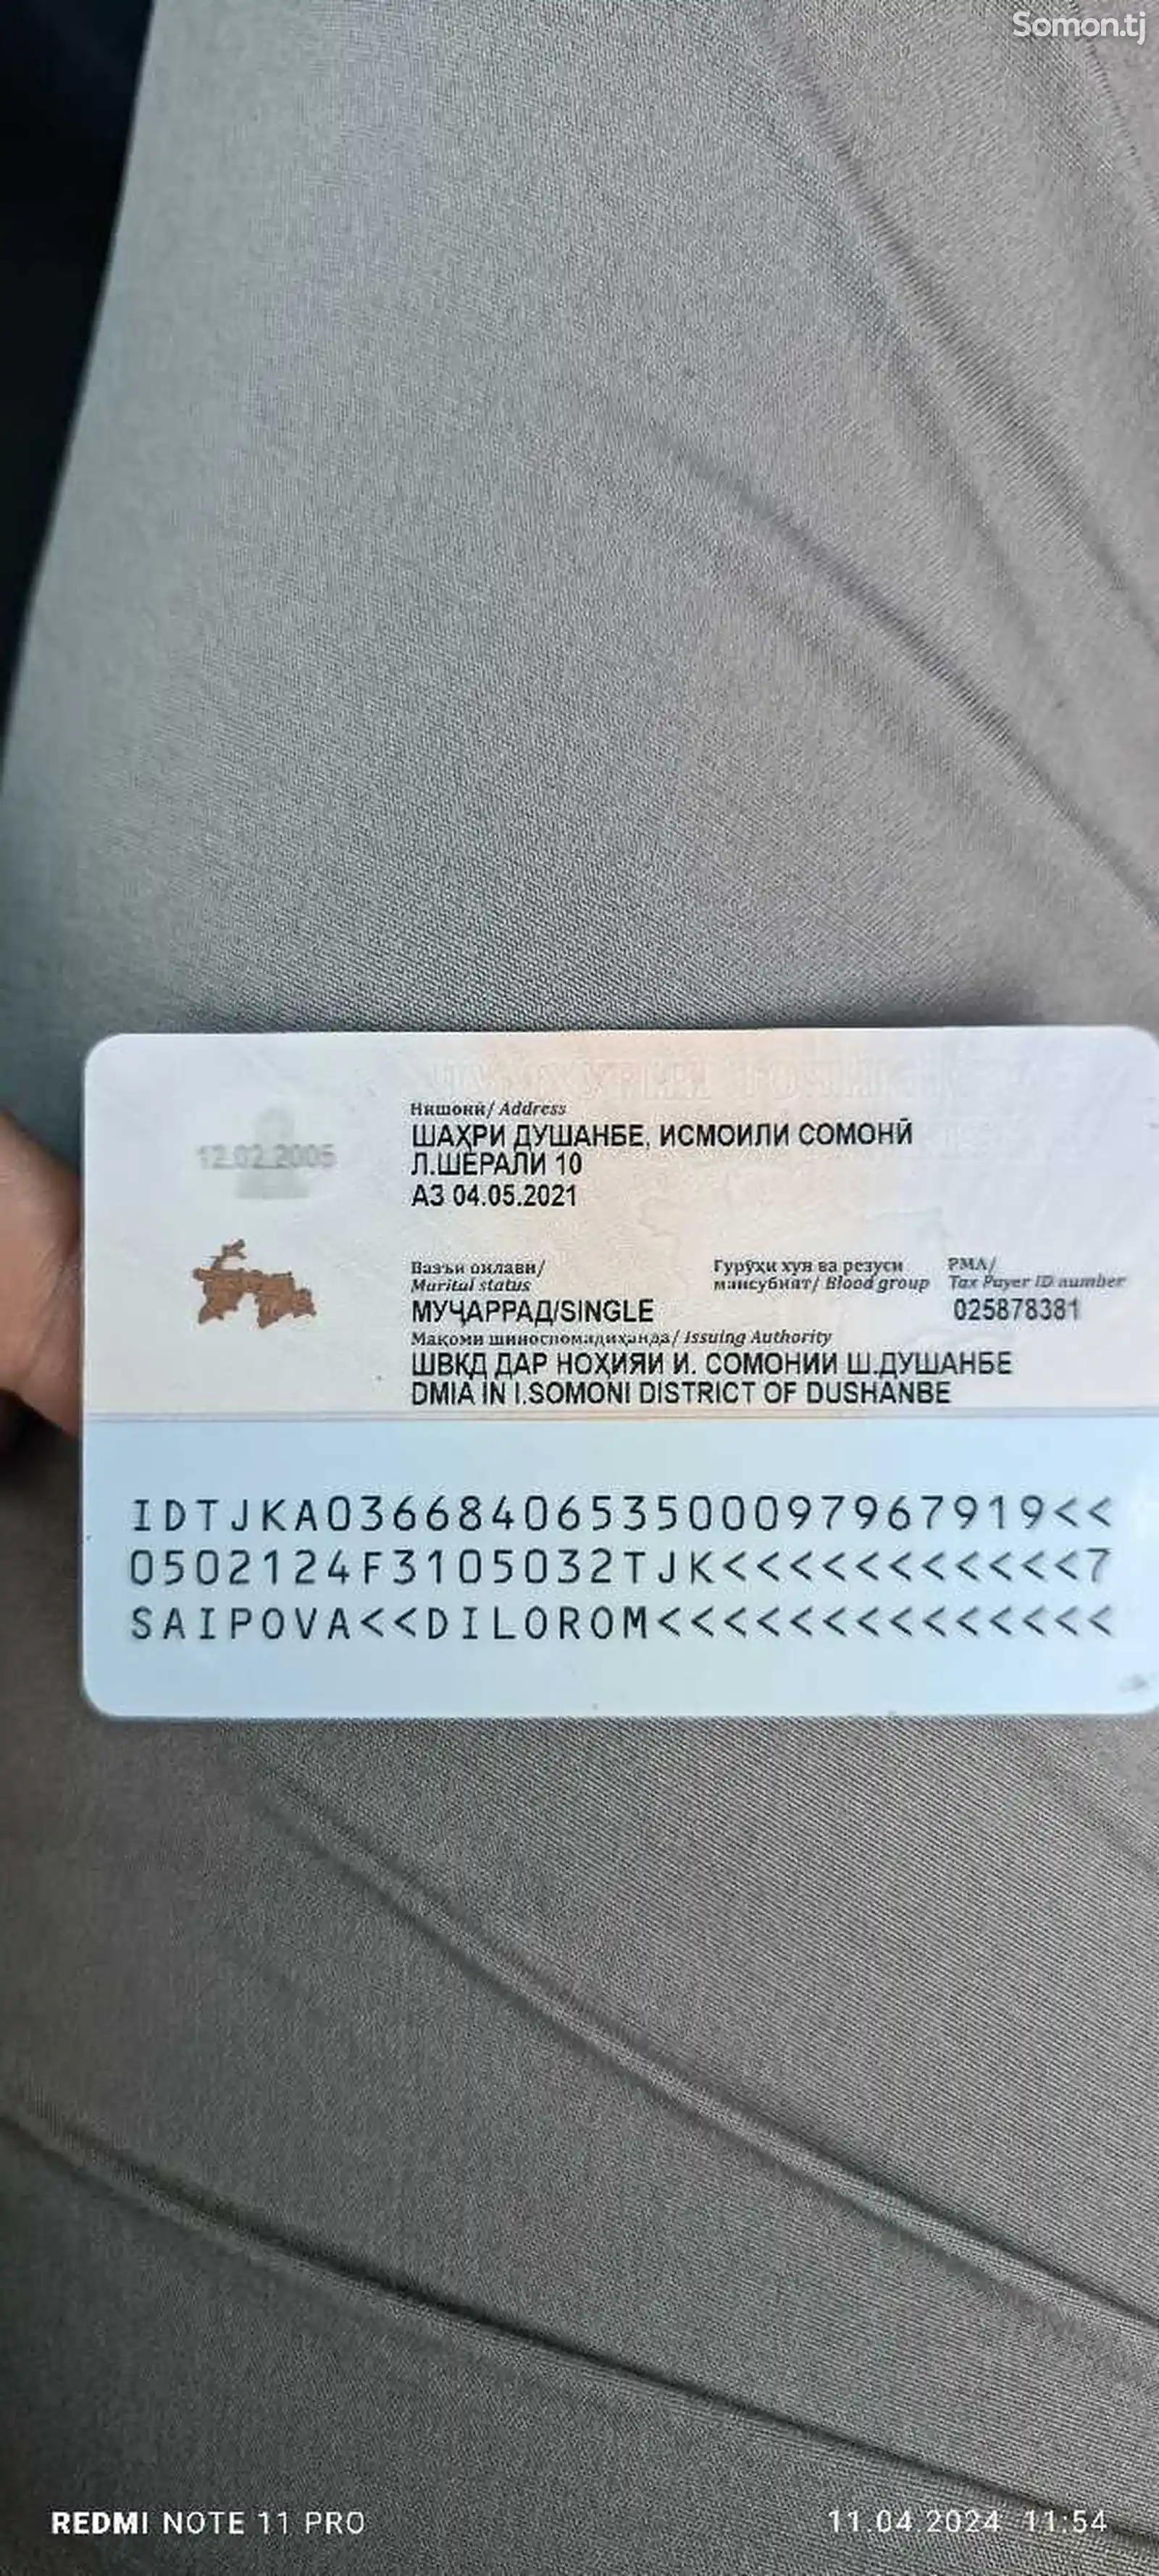 Утерян паспорт на имя Саиповой Дилором-2